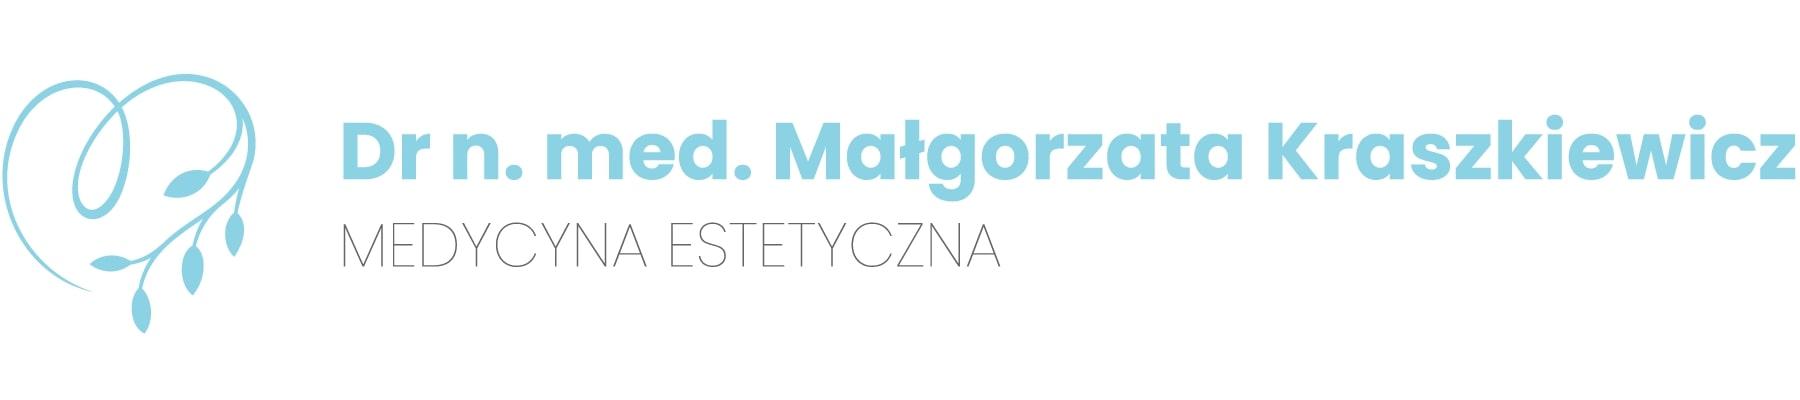 Specjalistyczna Praktyka Lekarska Małgorzata Kraszkiewicz, Szałsza, śląskie